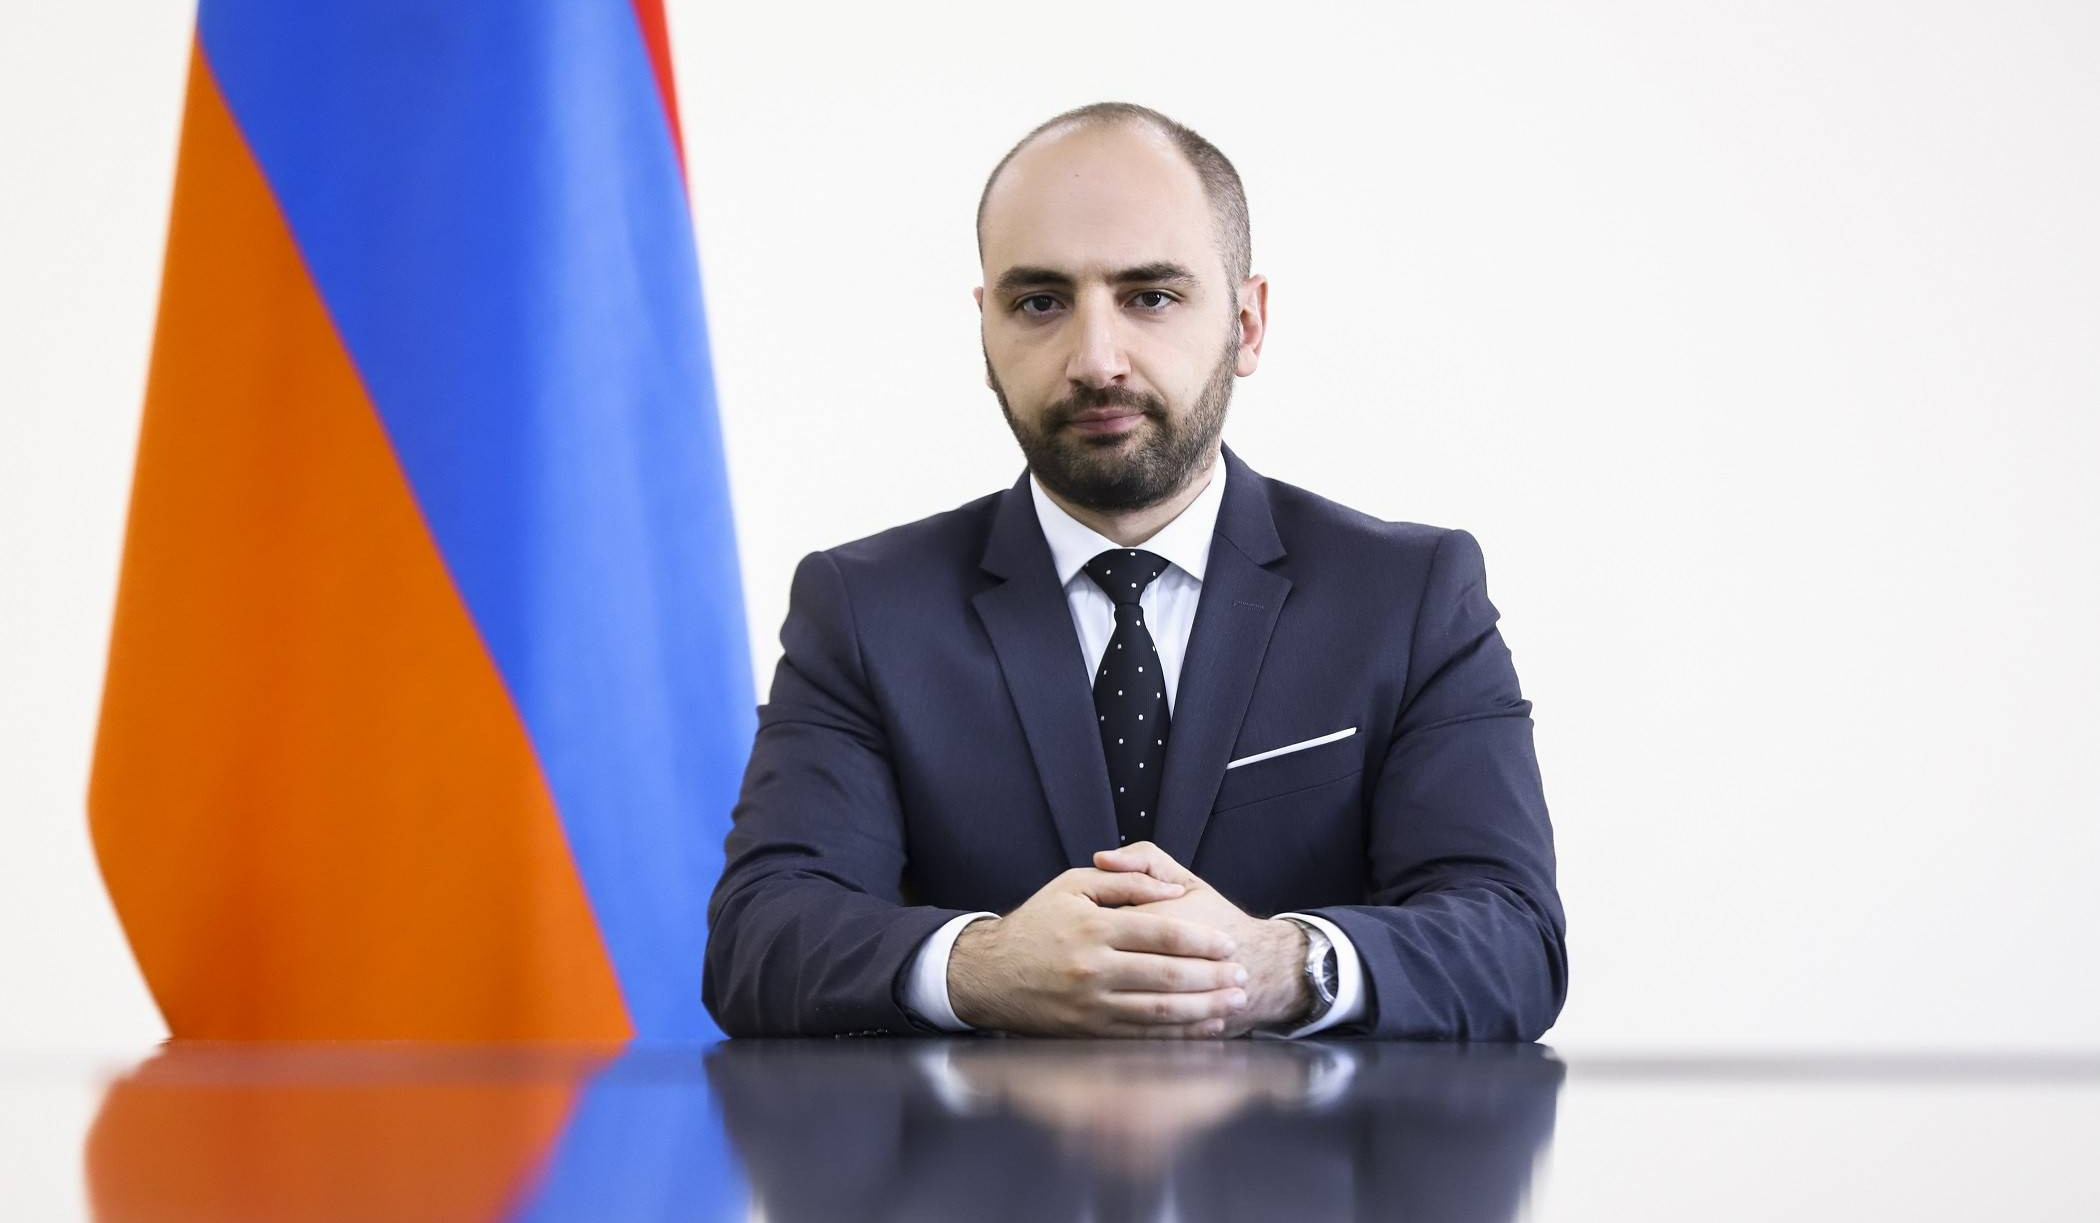 Посольство Армении в Украине продолжает работу, соблюдая все необходимые меры безопасности: МИД Армении